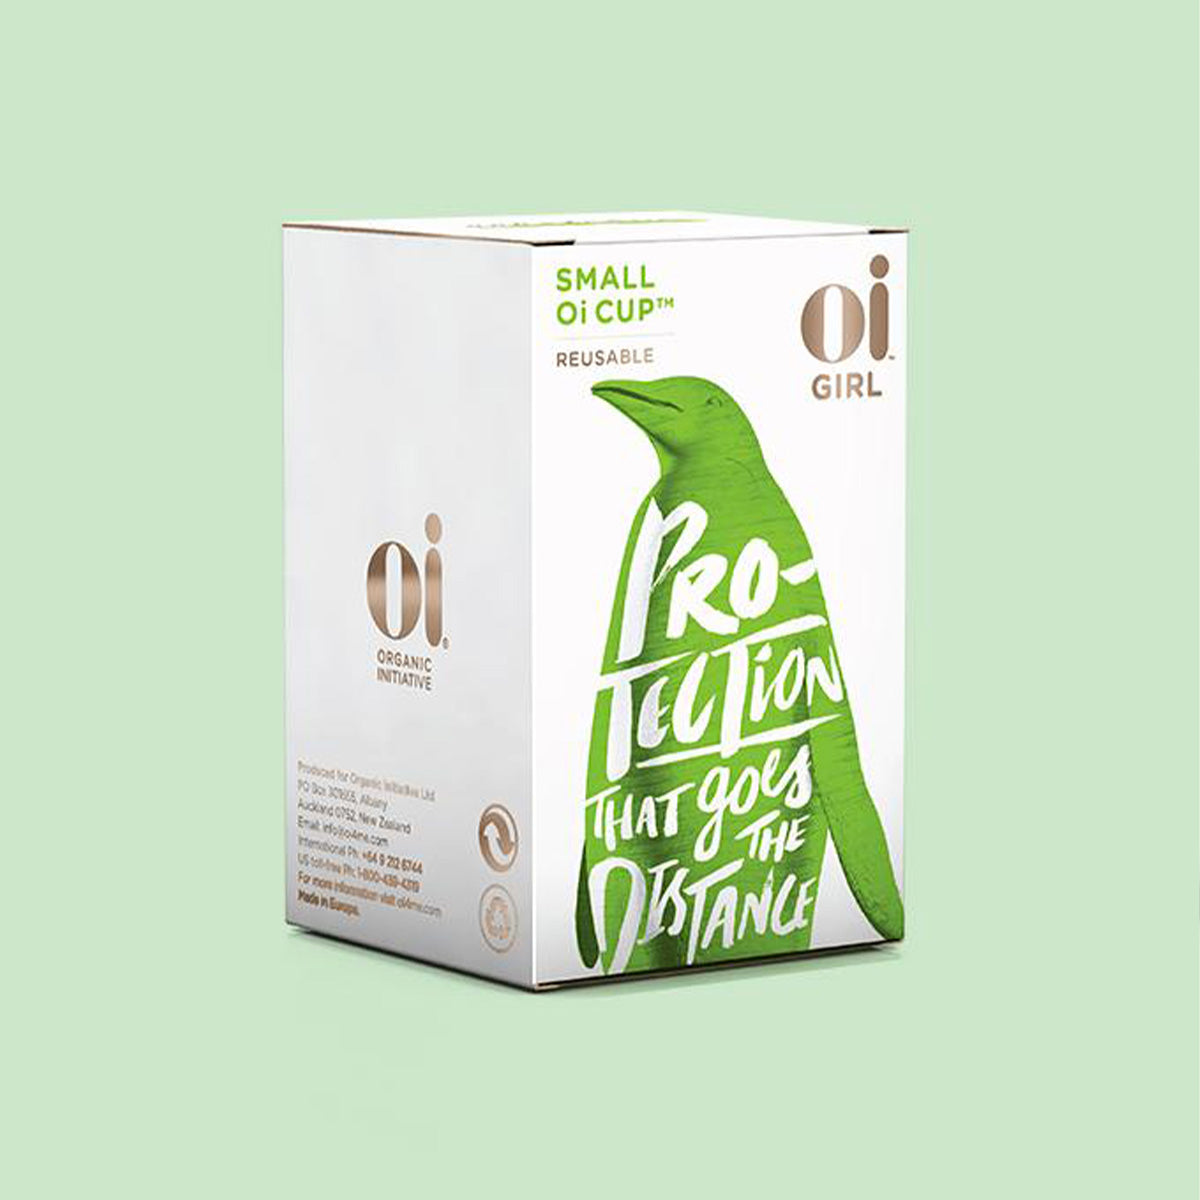  Oi, Organic Initiative - Menstrual Cup